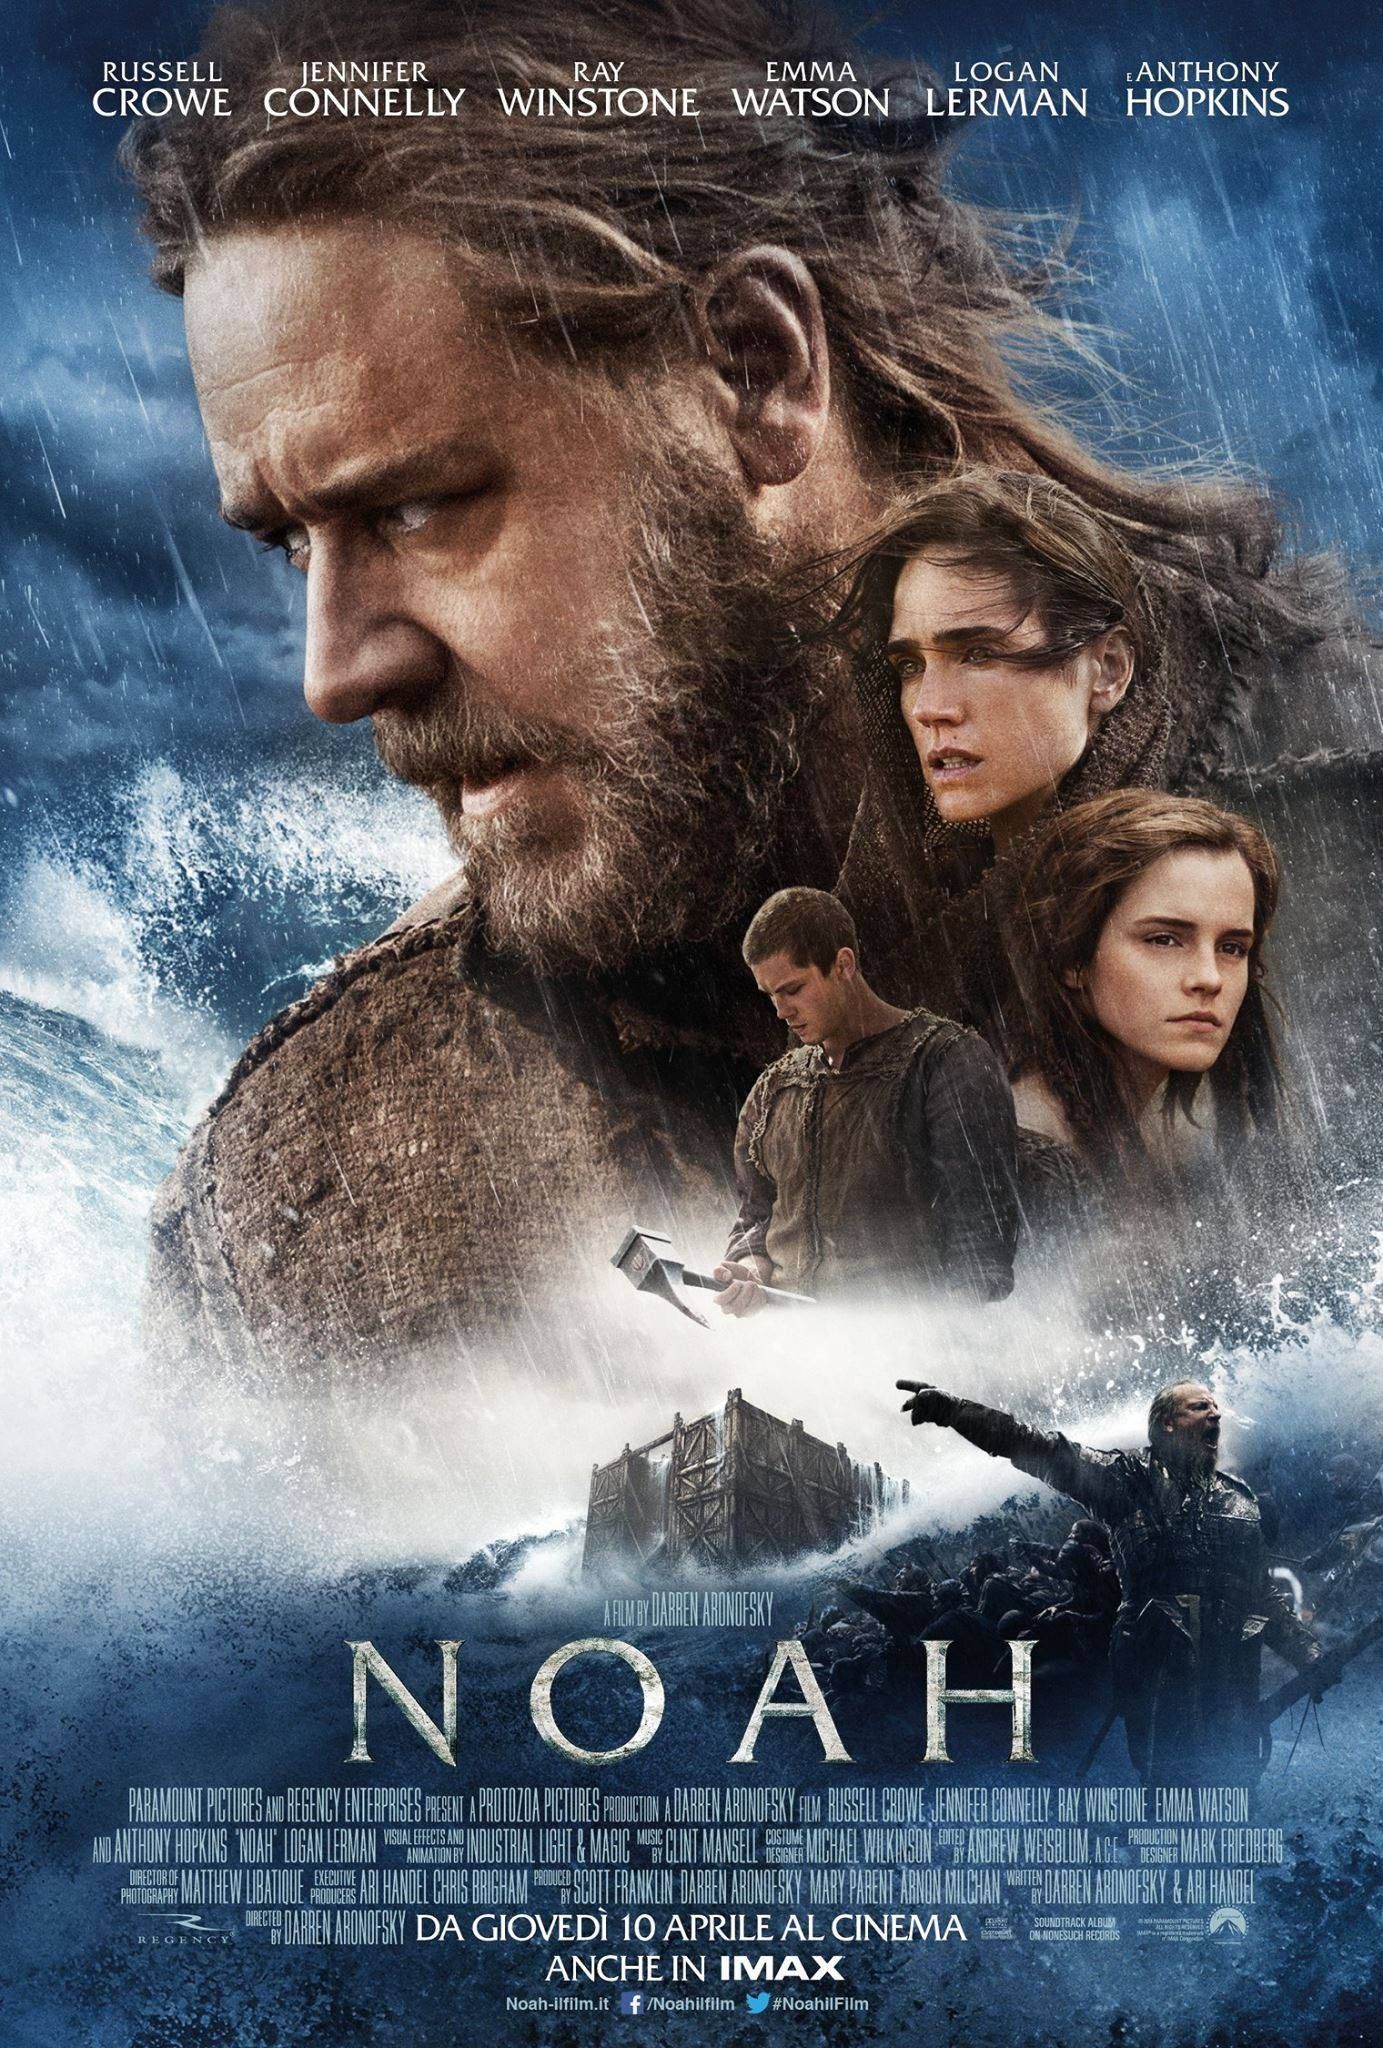 Noah Character Cast International Poster 2